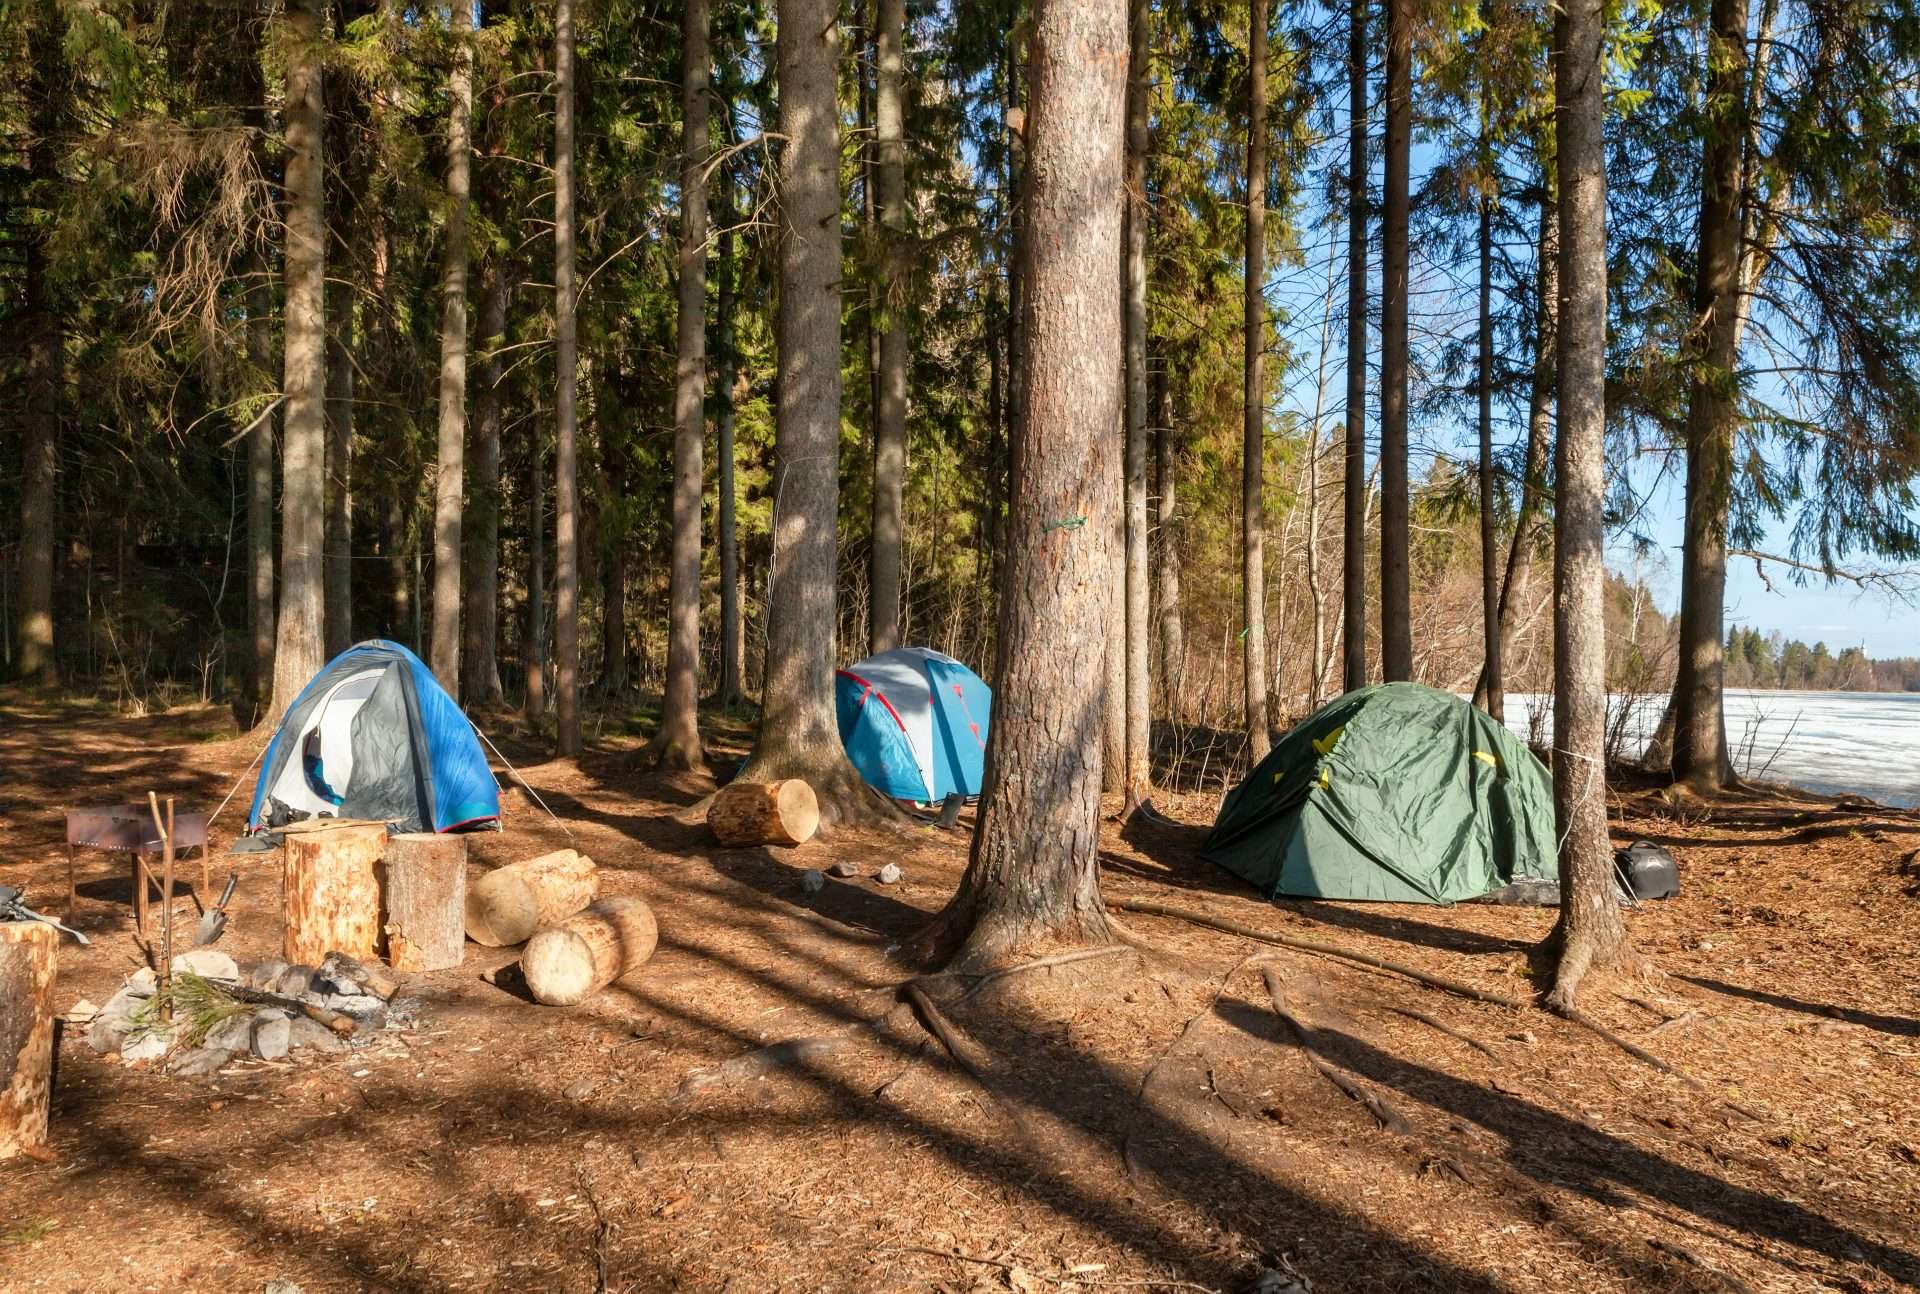 Tents set up for camping along Lake Superior